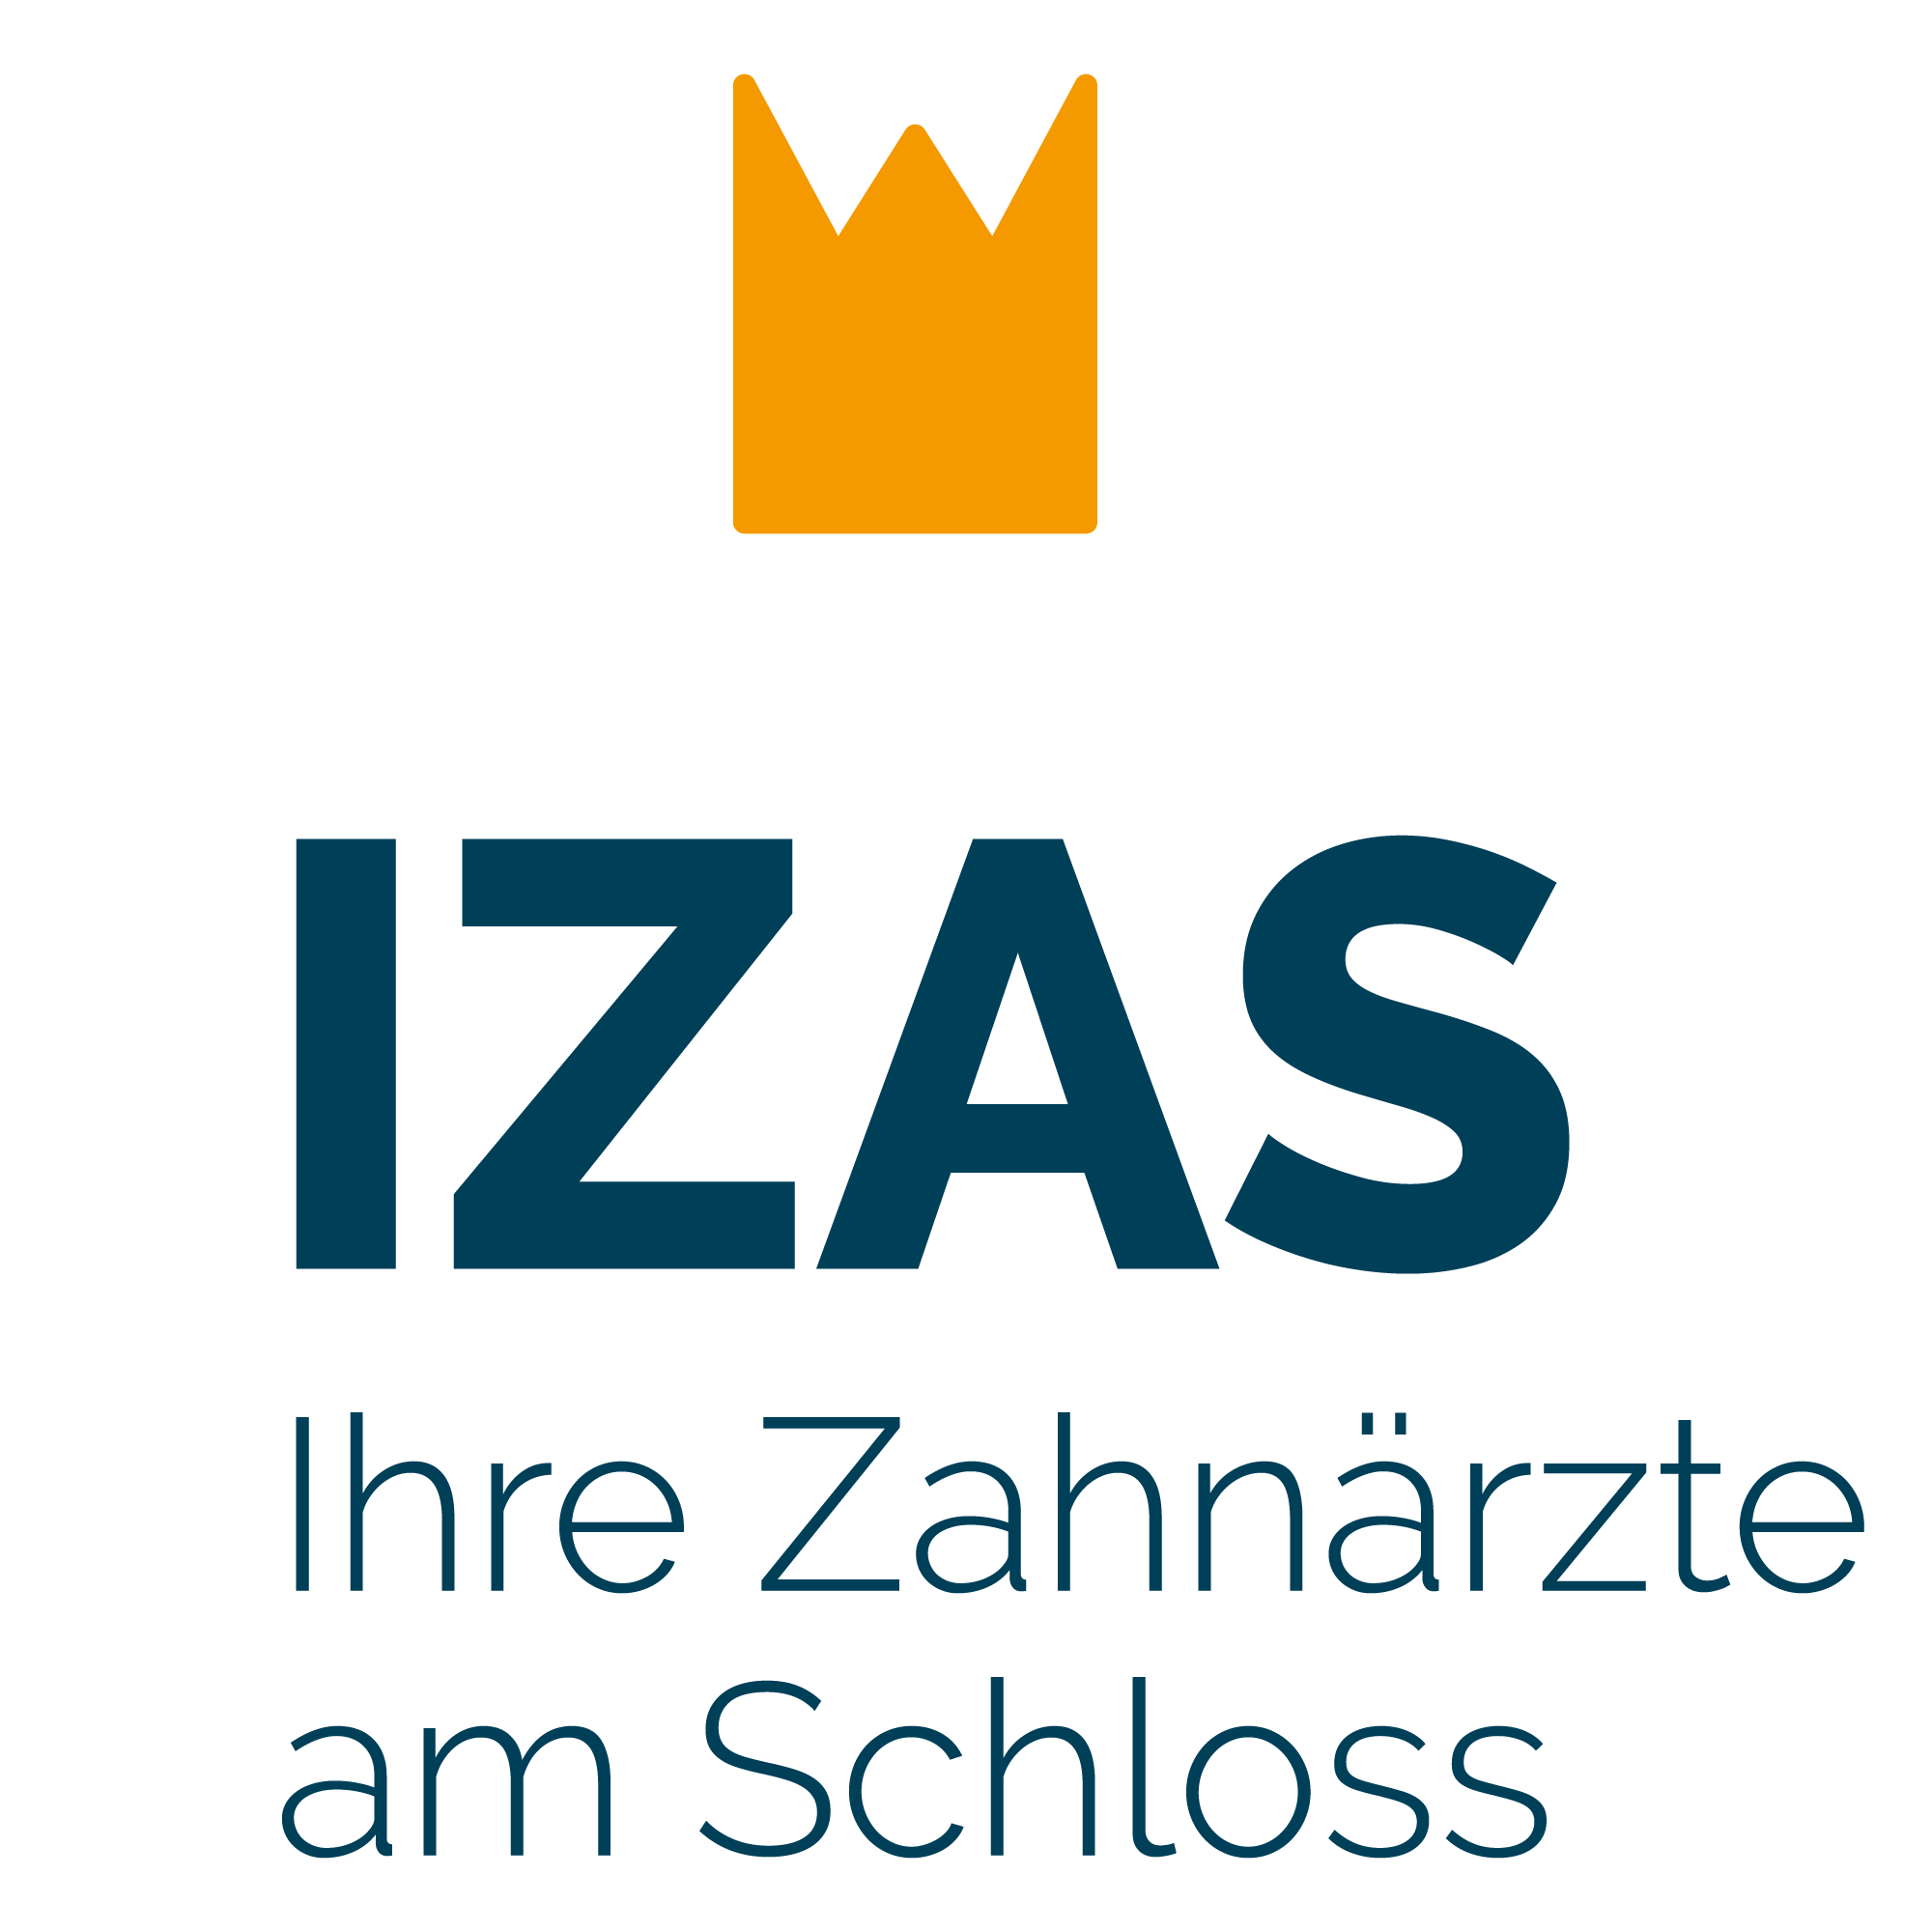 IZAS - Ihre Zahnärzte am Schloss (Bensberg) in Bensberg Stadt Bergisch Gladbach - Logo